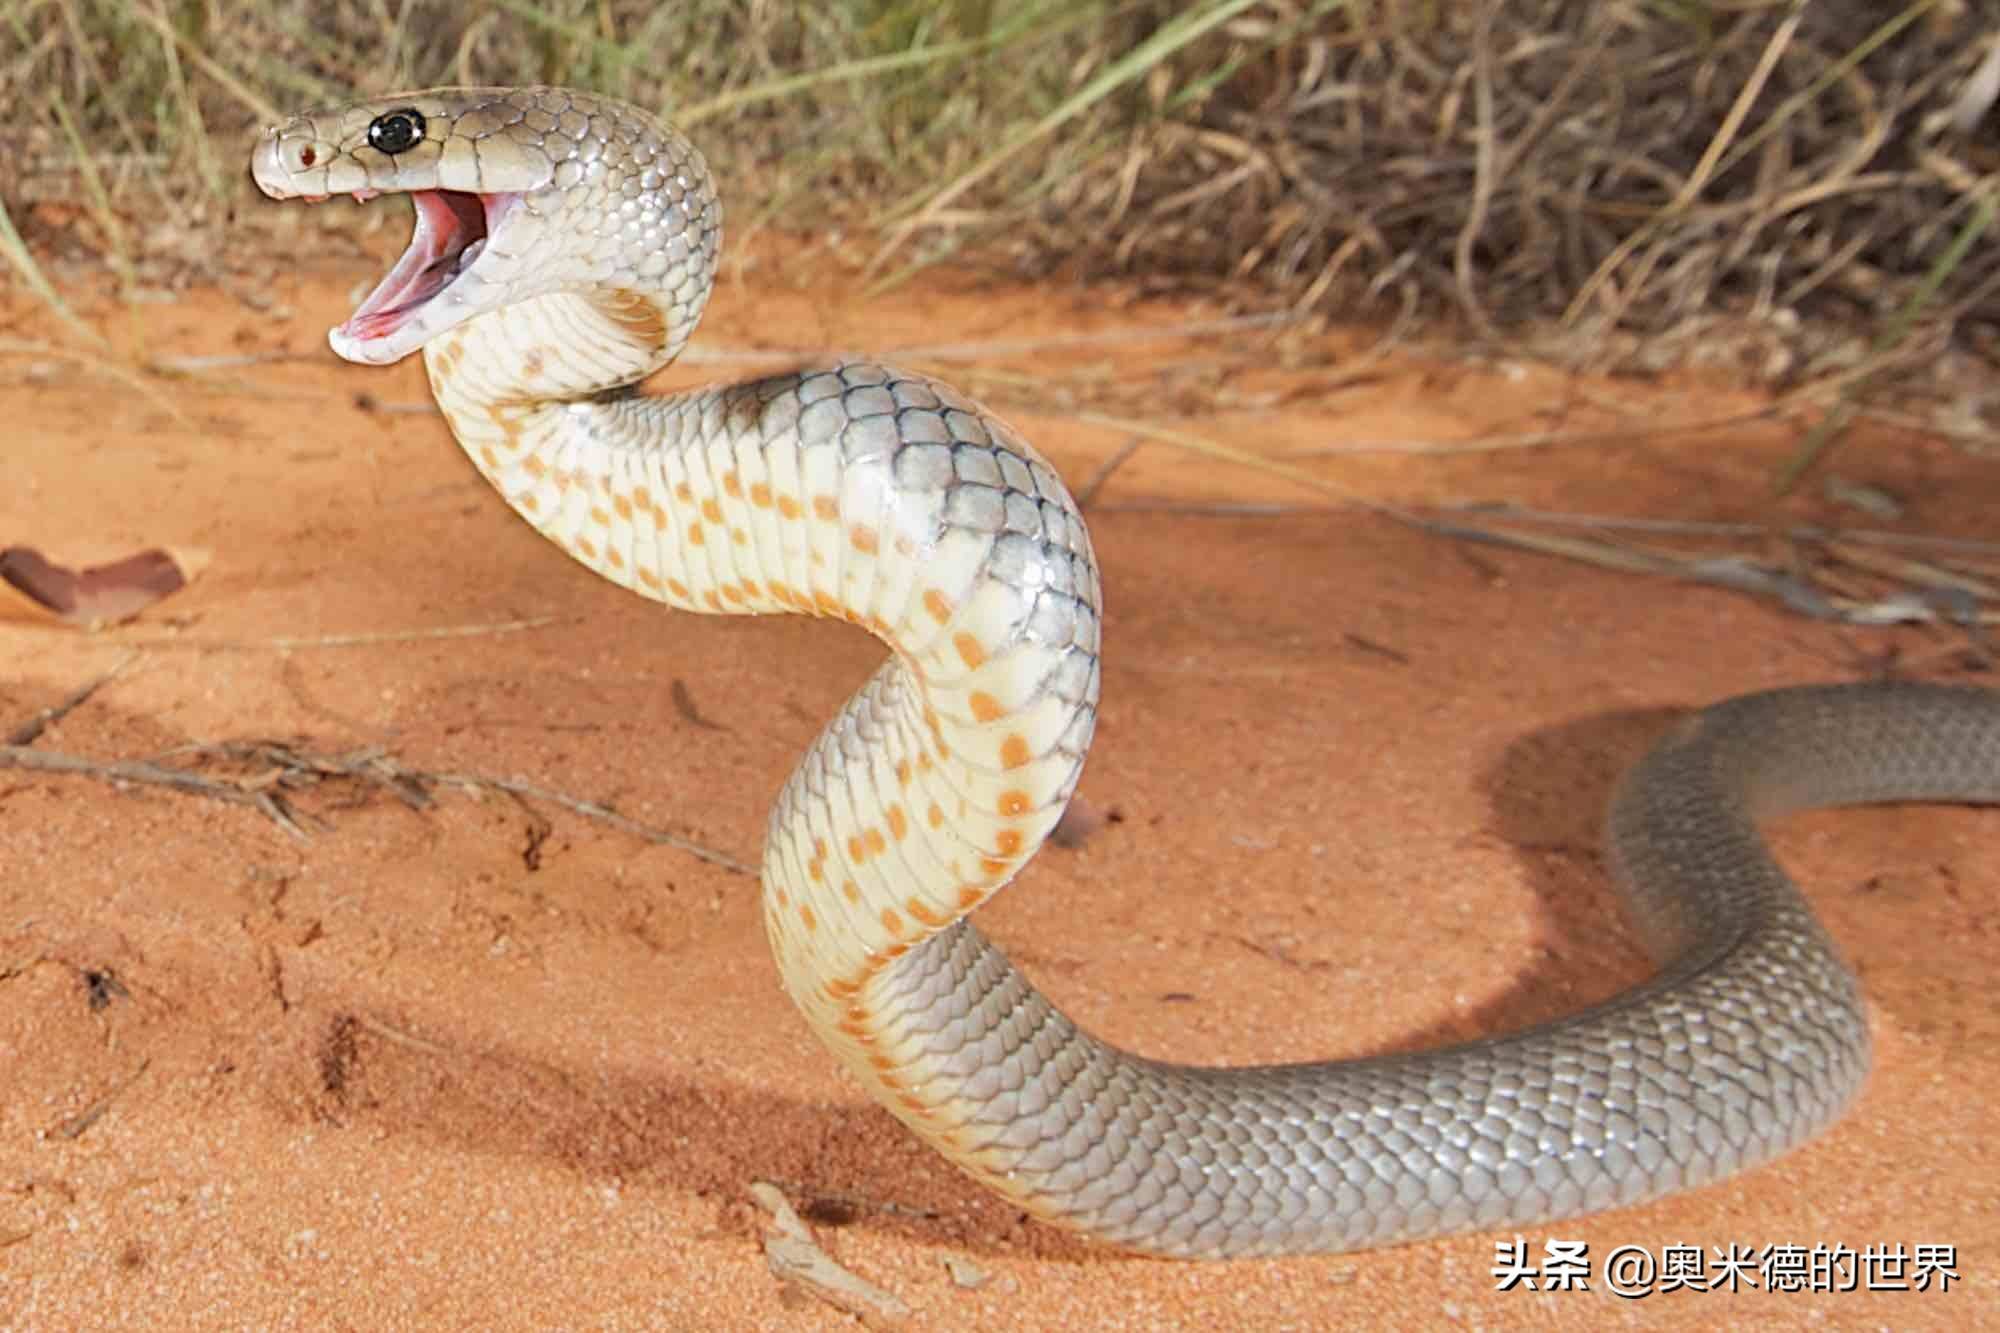 全世界最毒的十种陆地毒蛇中国上榜两种毒蛇